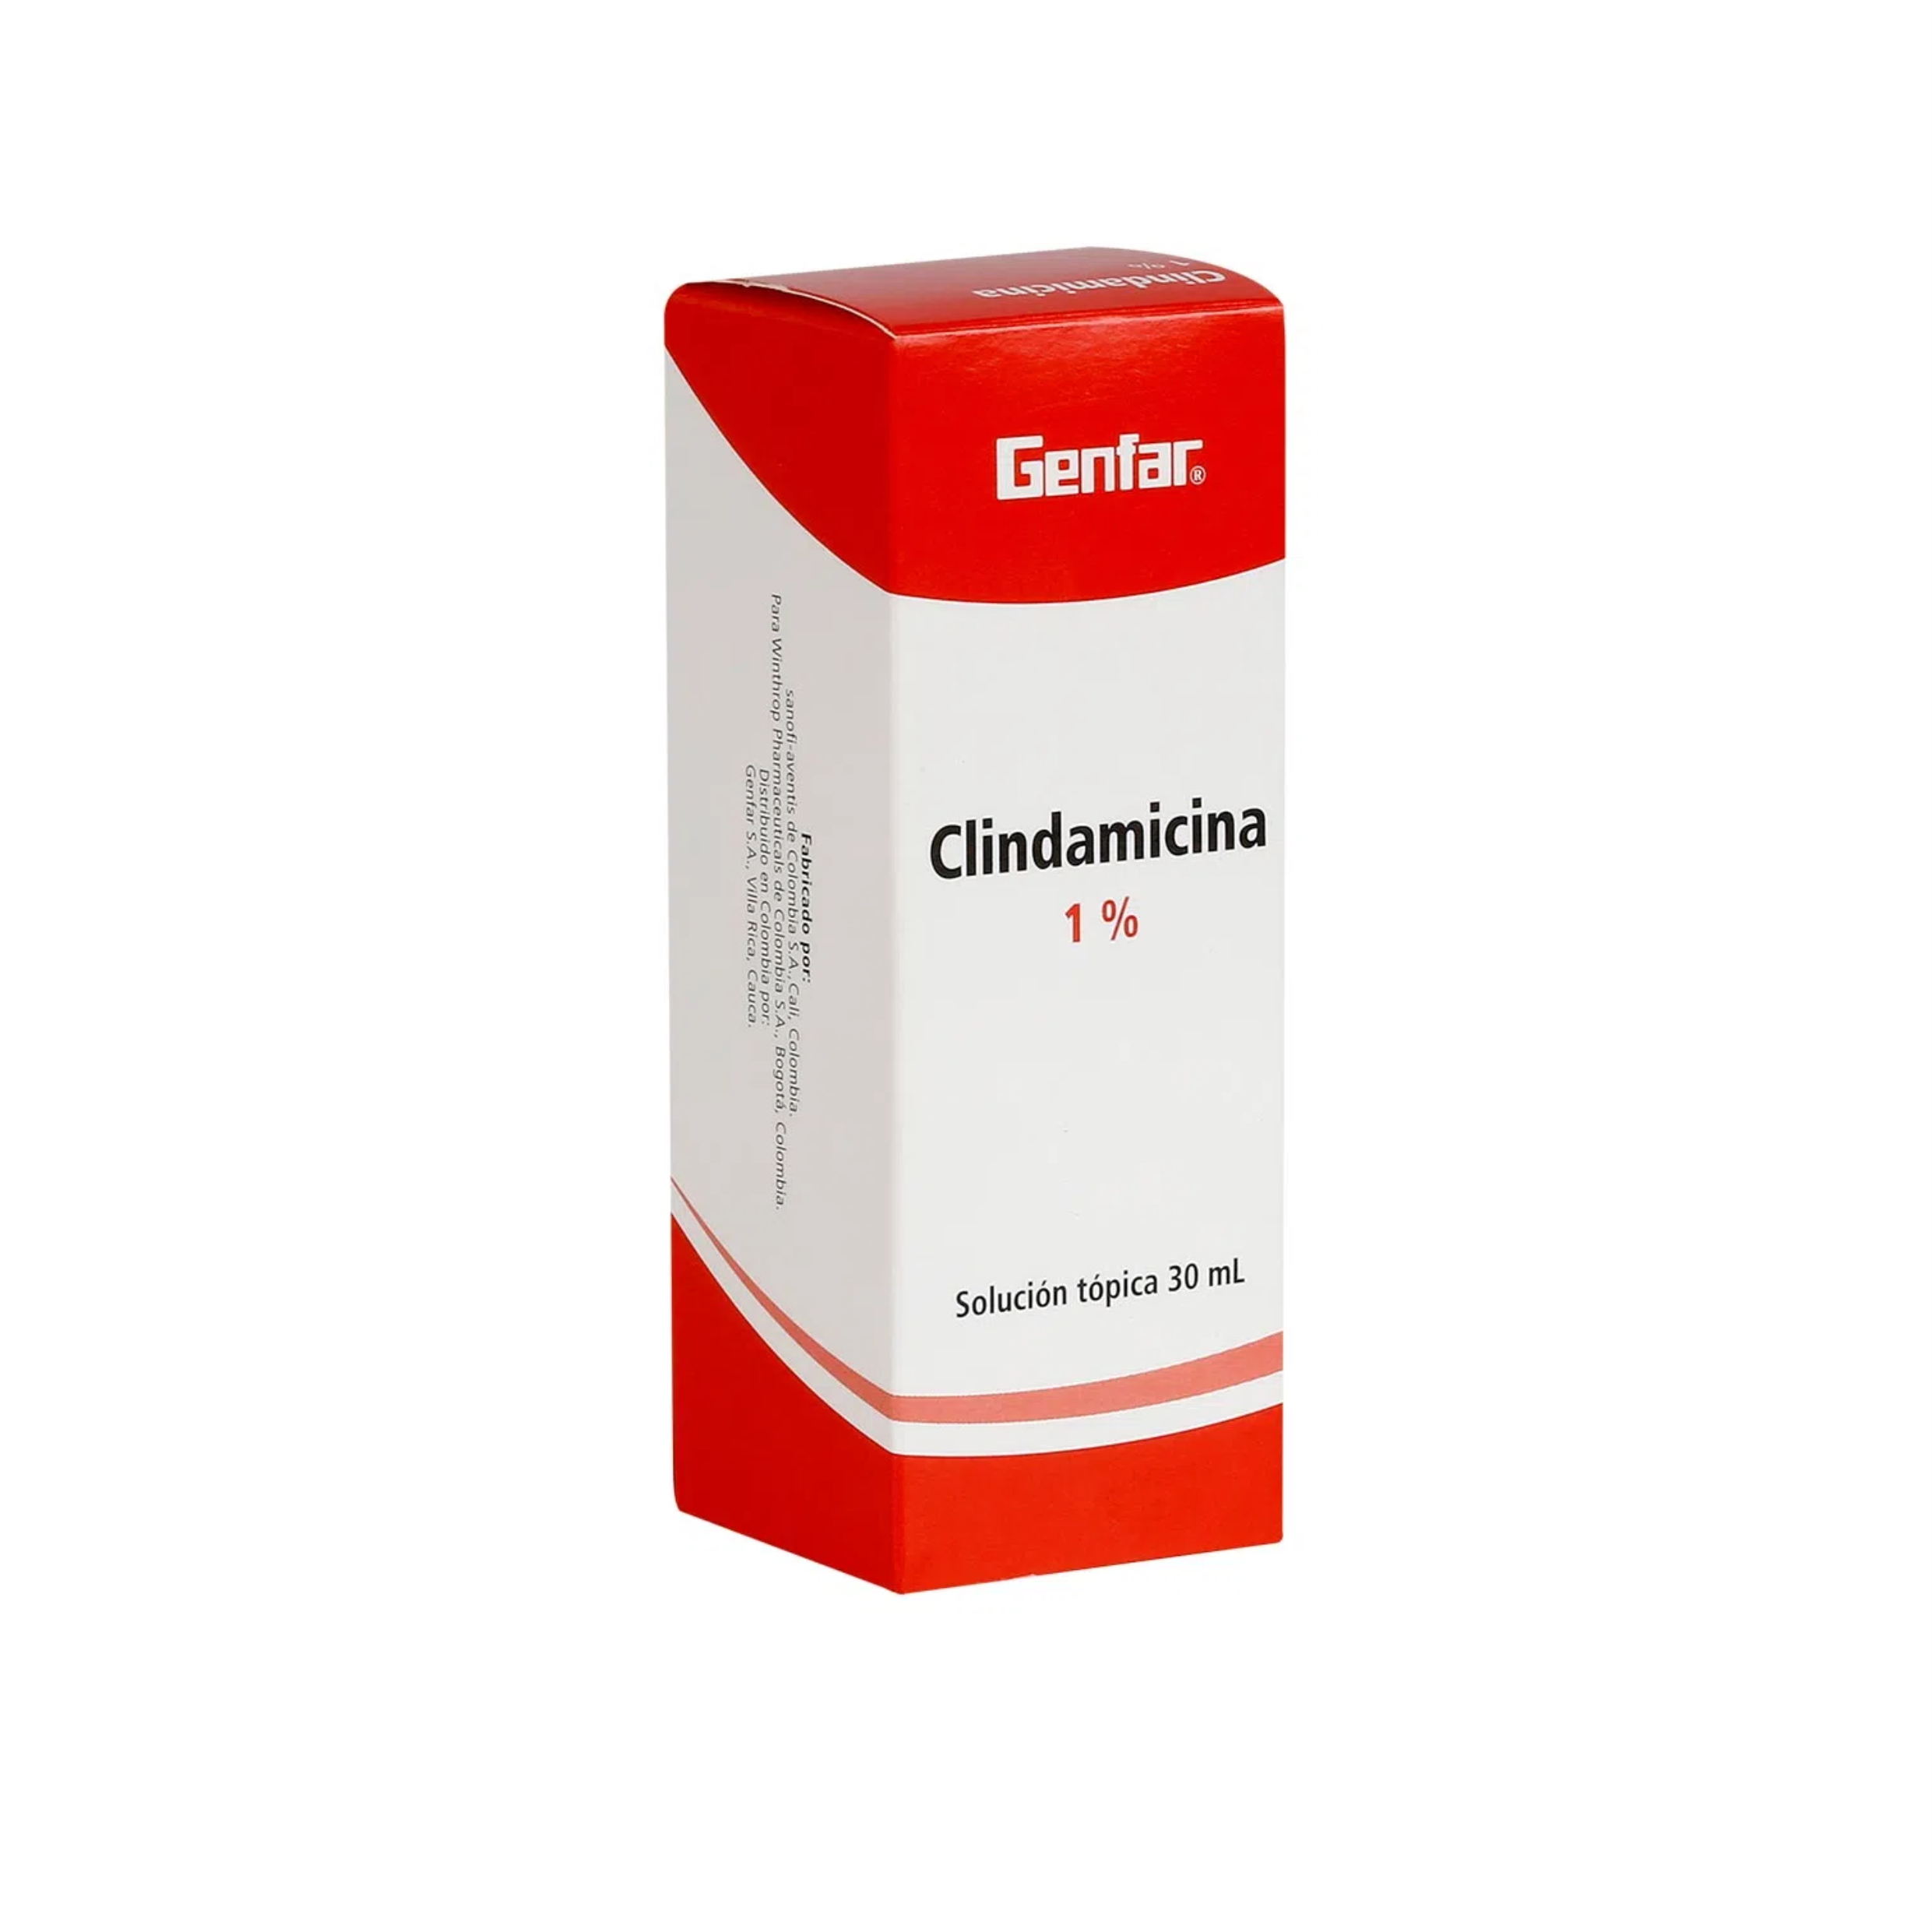 Clindamicina 1% solución tópica 30 mL - Genfar